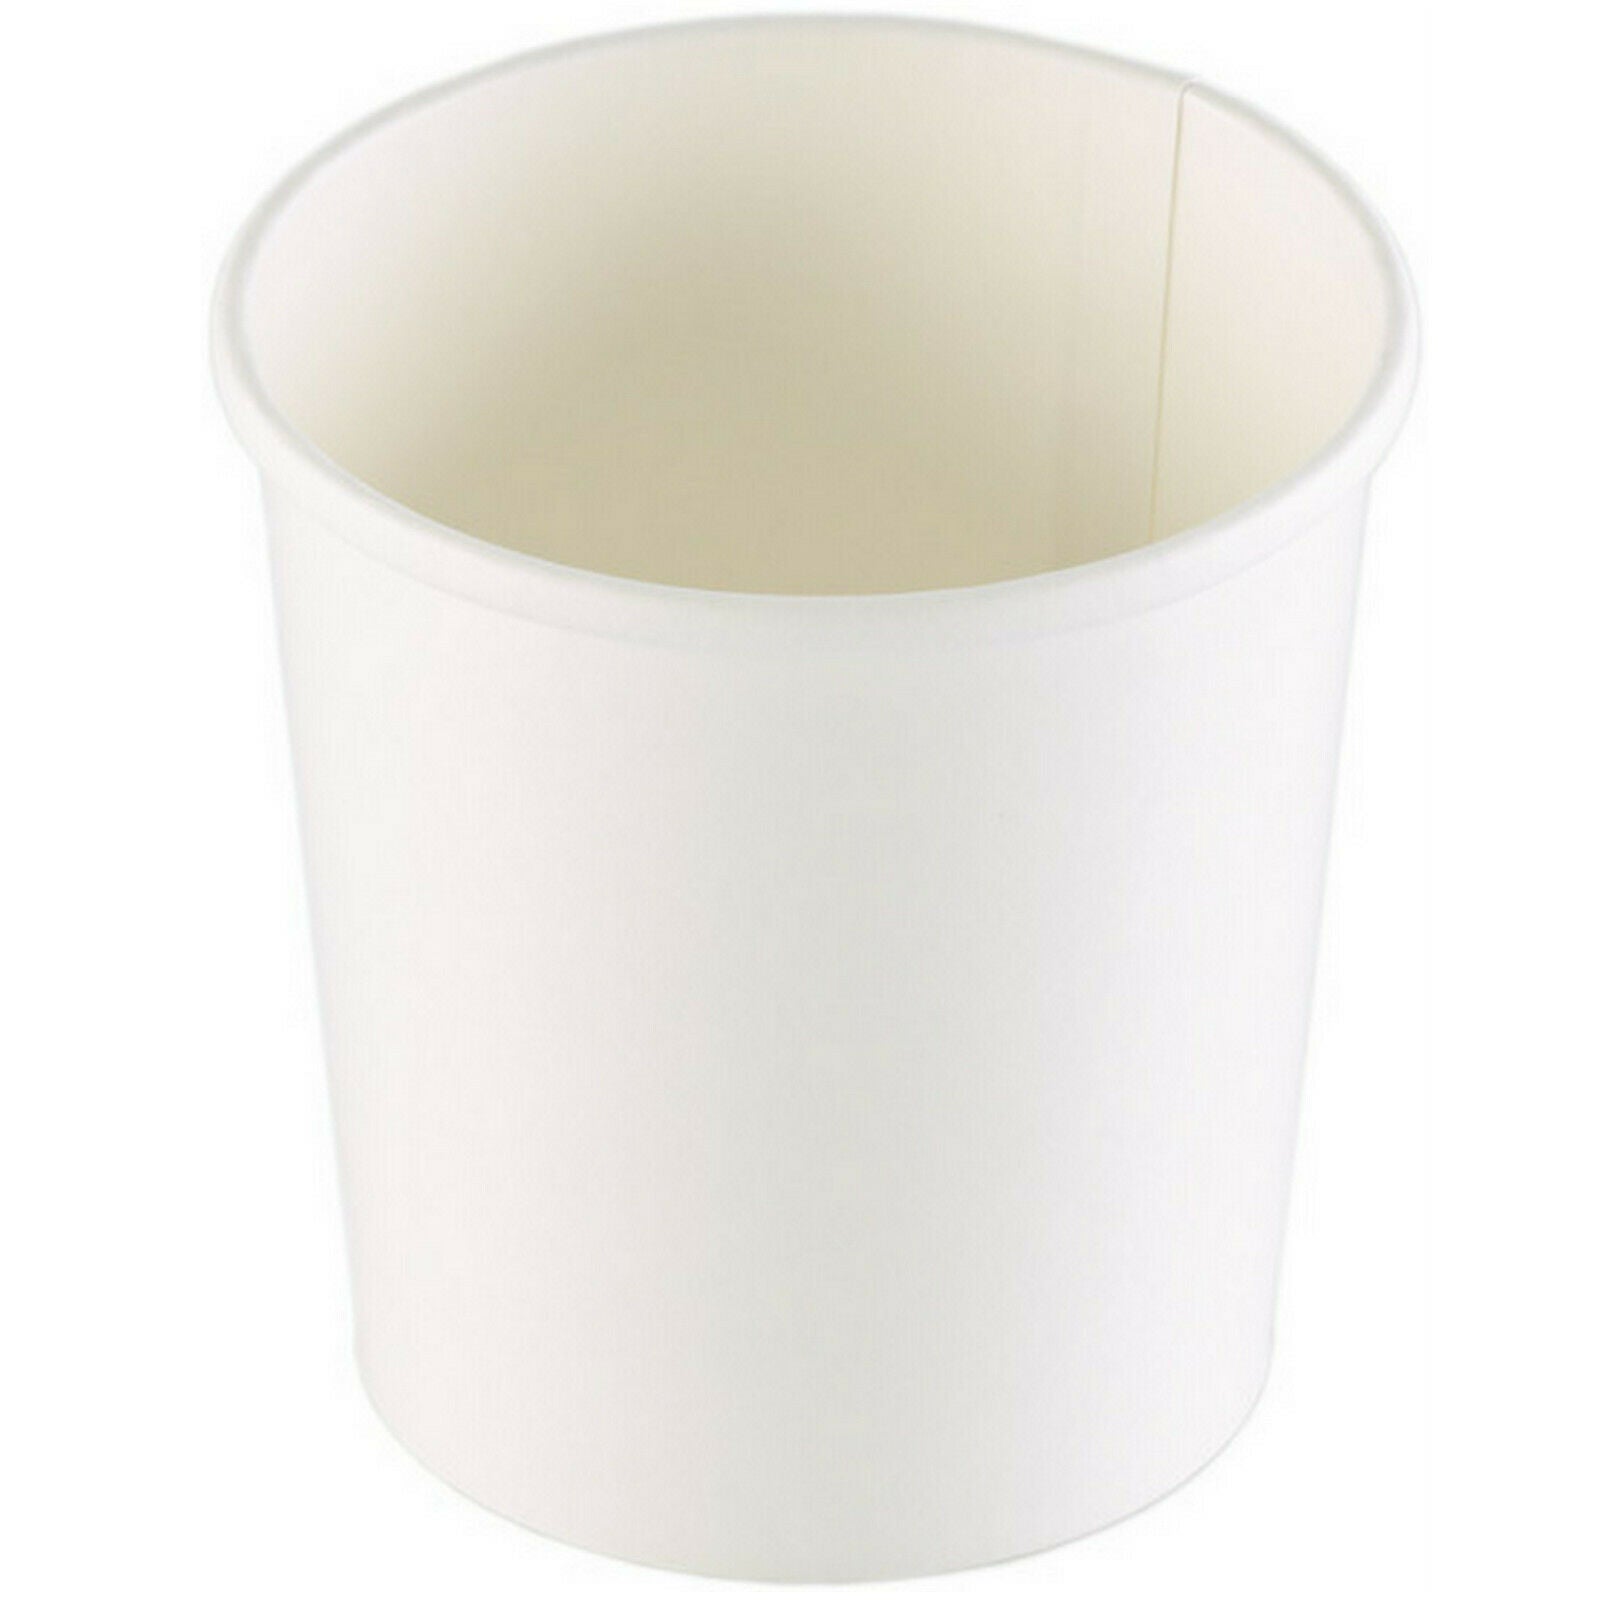 100 - 600 Stück Suppenbecher 355 ml / 485 ml Pappe ohne Deckel Soup to go Weiß - 200 Stück, 485 ml, Ø 9,7 cm x 9,9 cm